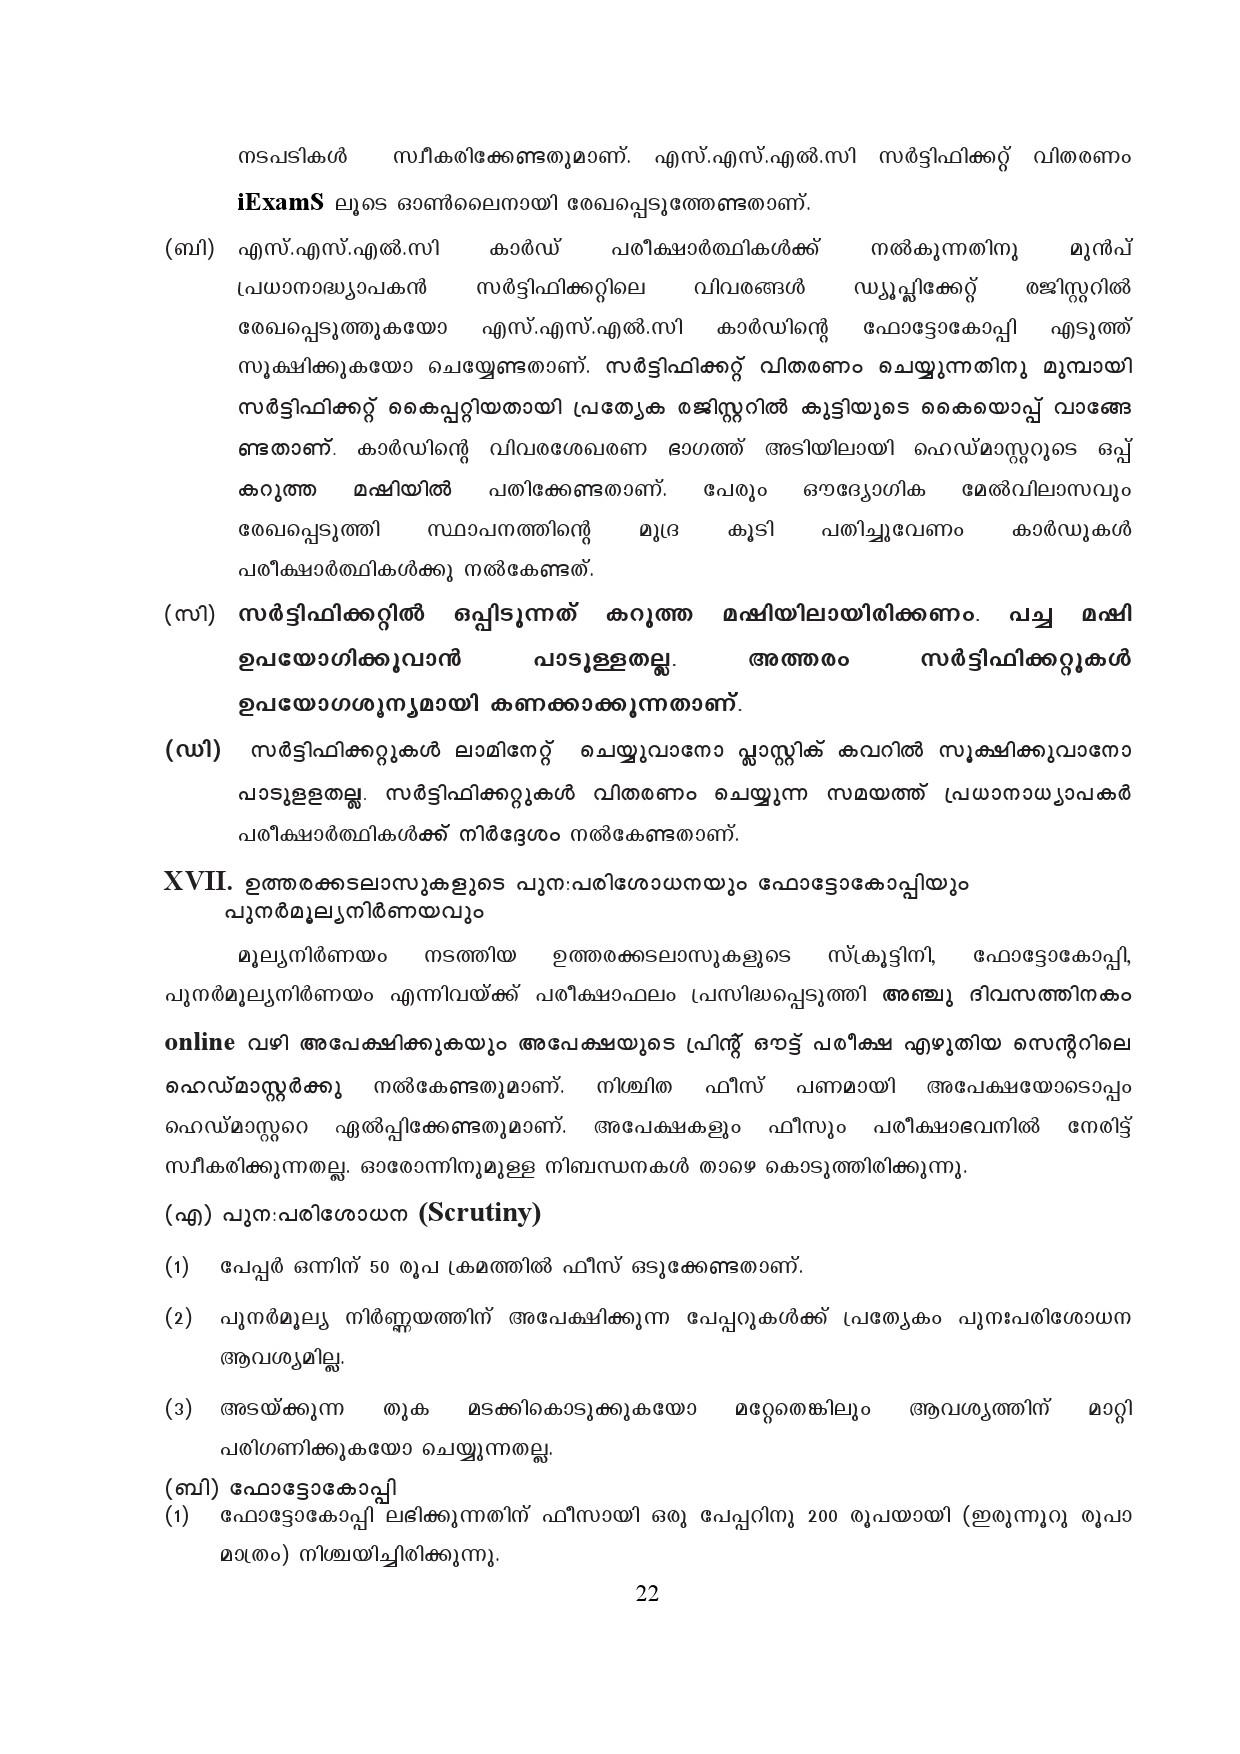 Kerala SSLC Exam Result 2019 - Notification Image 22